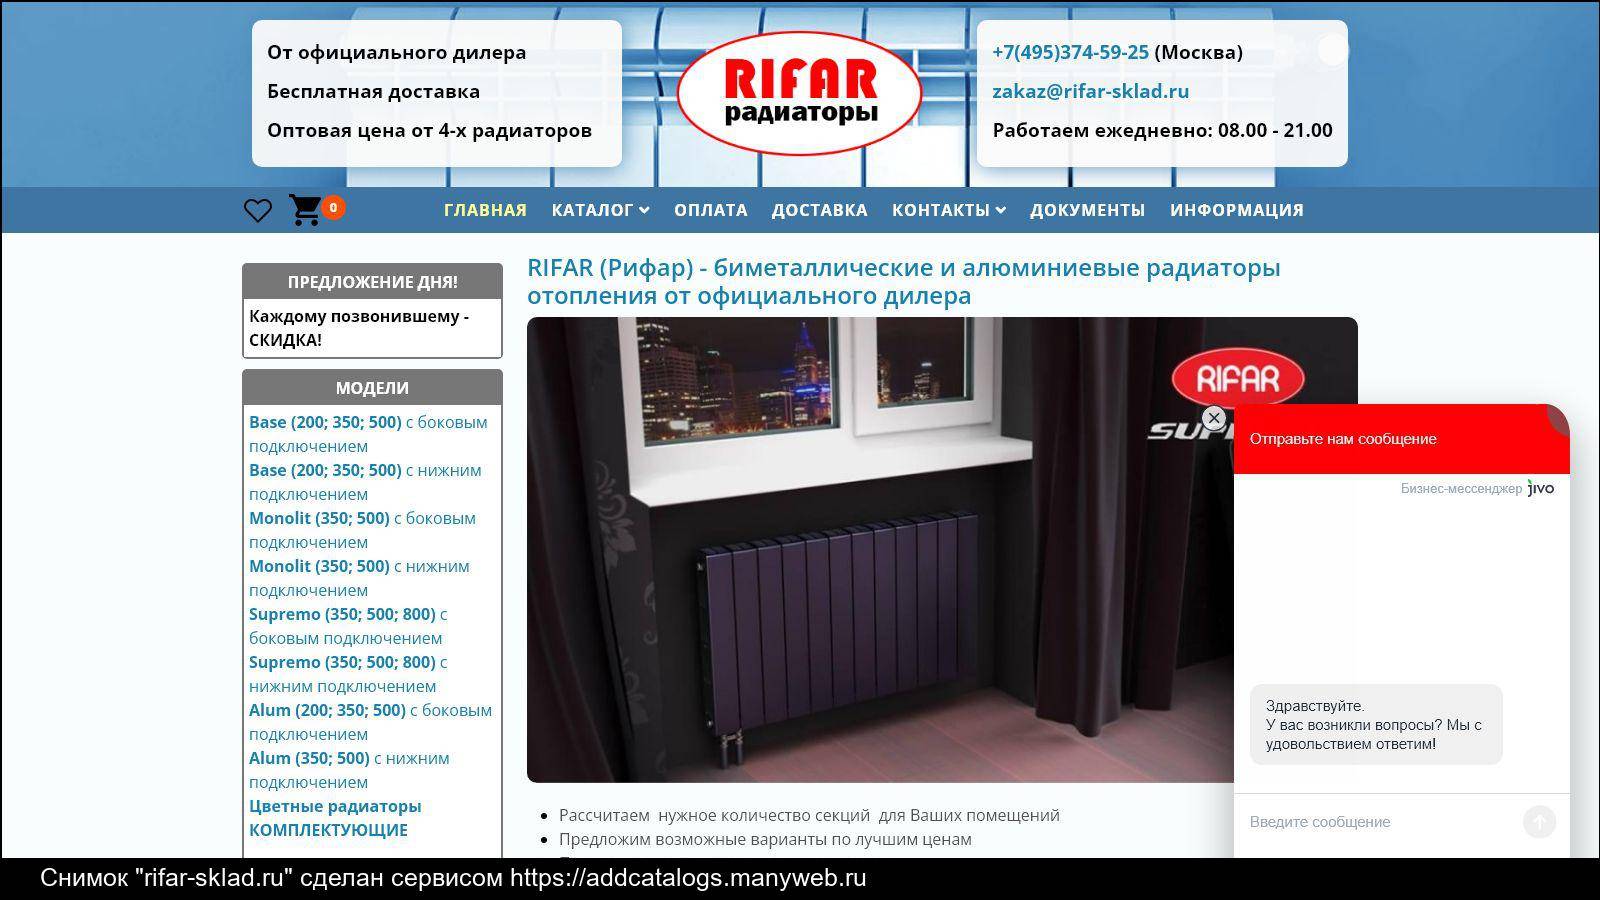 Радиаторы рифар идеально подходят для российских отопительных систем - системы отопления